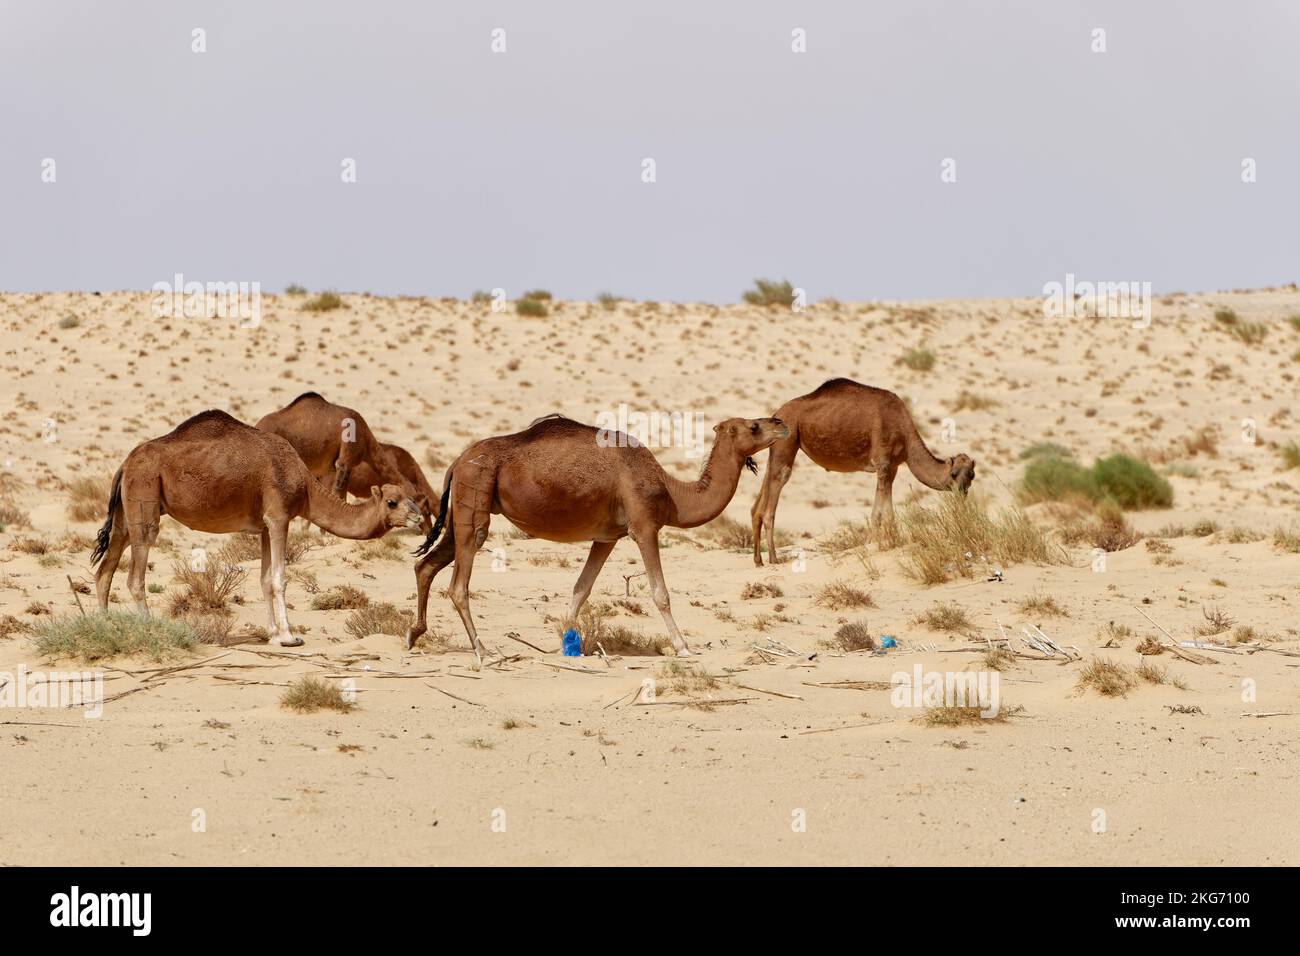 Eine Gruppe Kamele in der Wüste. Wilde Tiere in ihrem natürlichen Lebensraum. Wildnis und trockene Landschaften. Reise- und Tourismusziel in der Wüste. Stockfoto